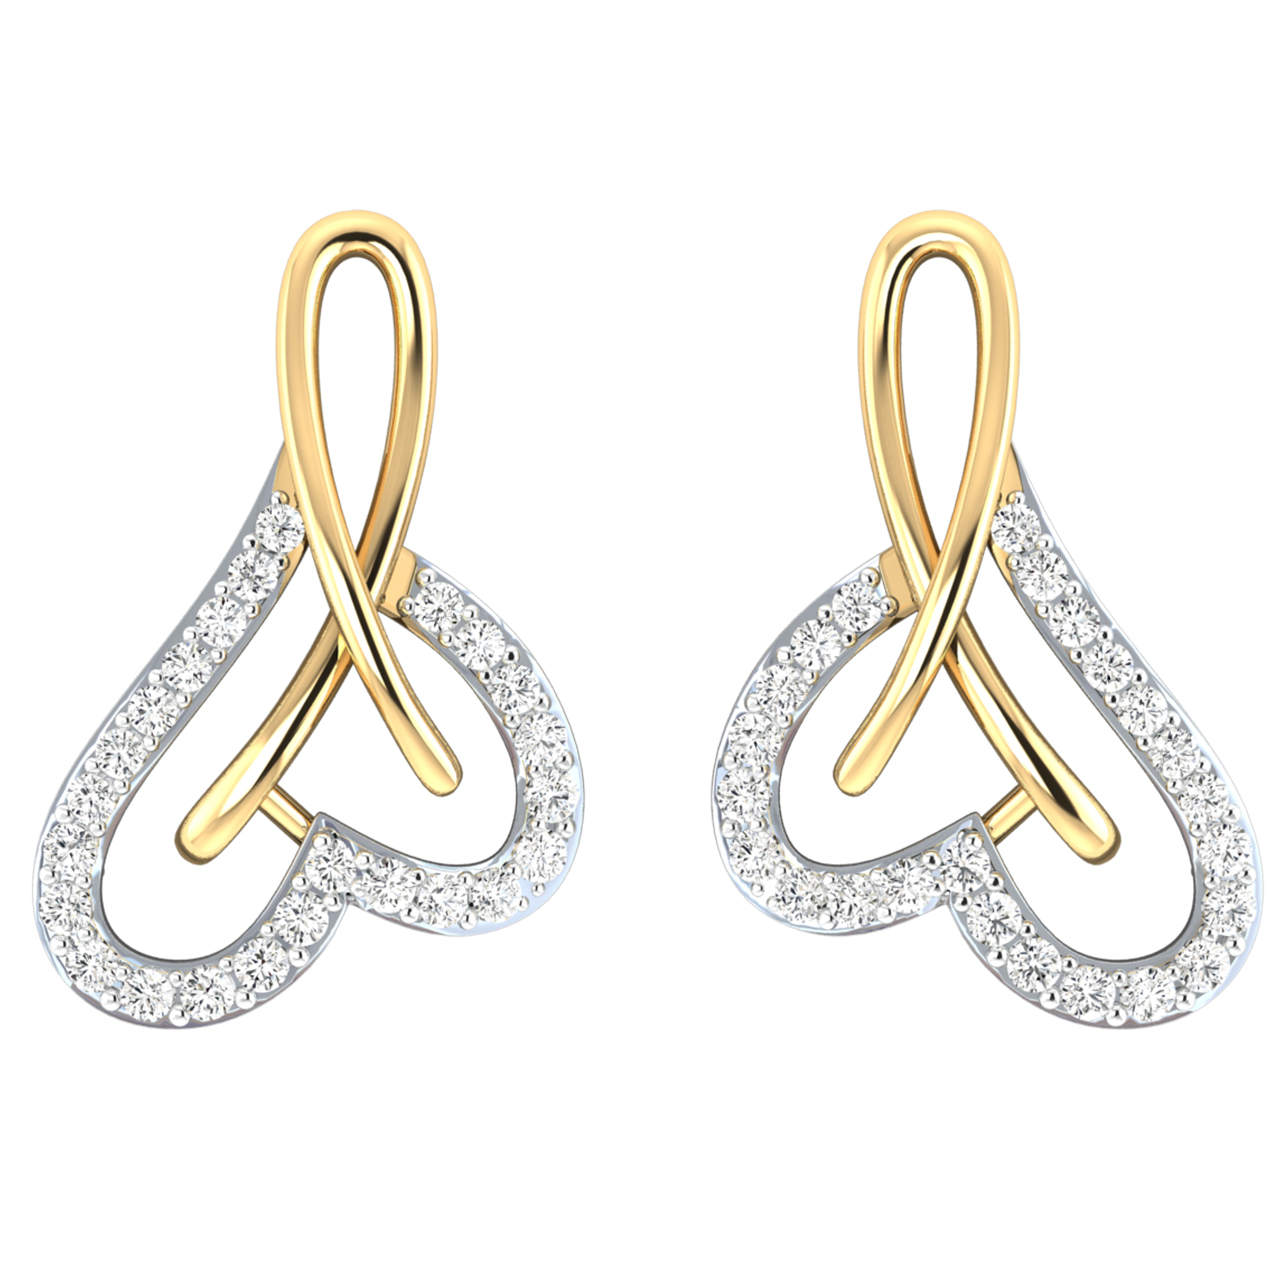 Klara Heart Diamond Stud Earrings For Her